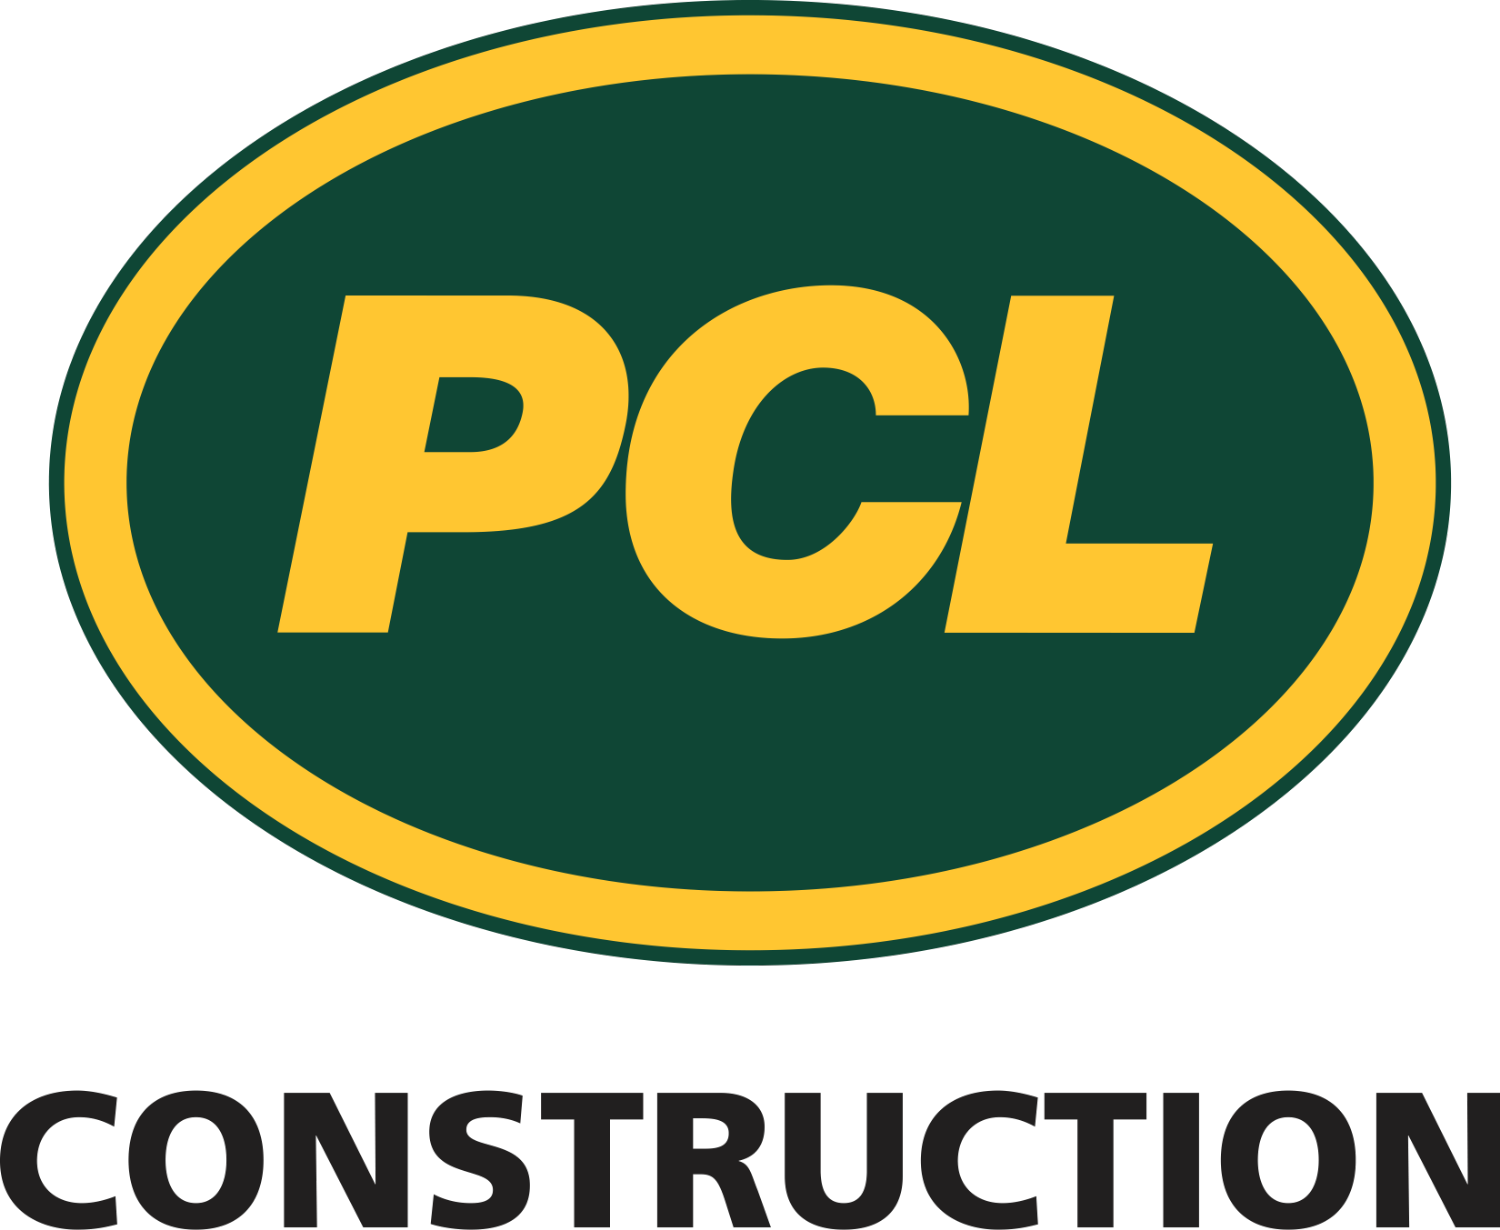 PCL Construction Management Inc. logo